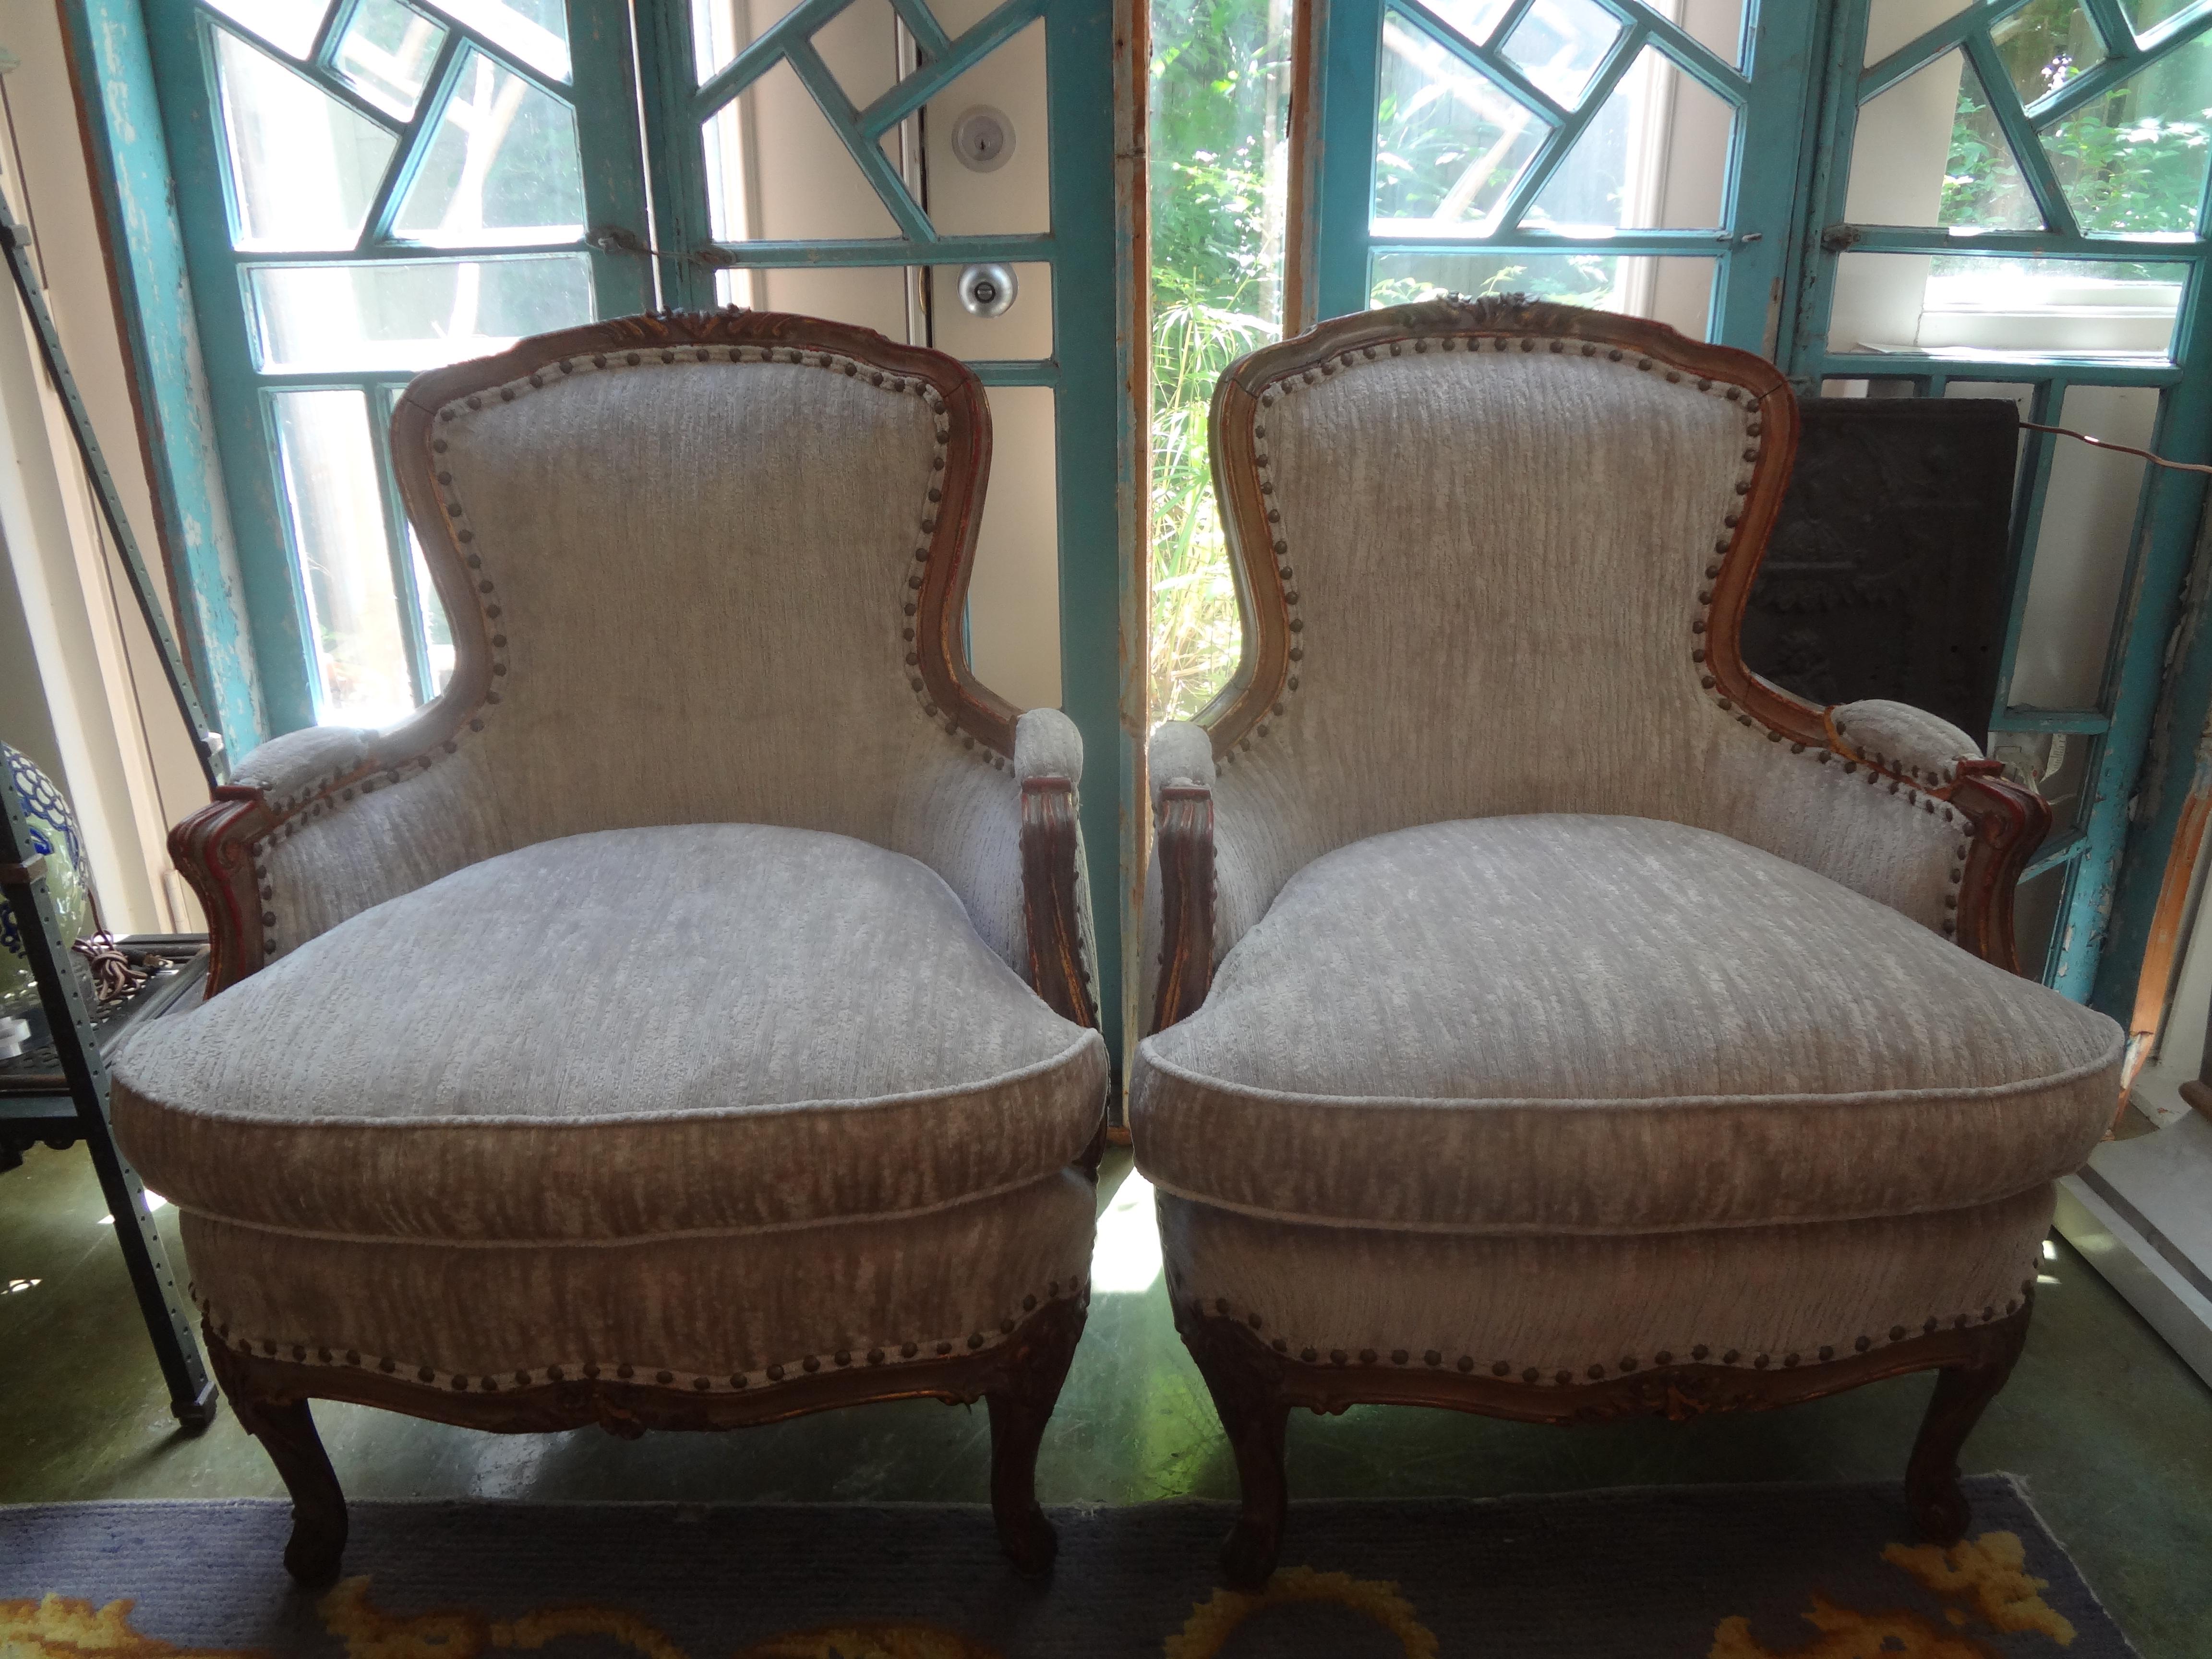 Paar italienische Bergères im Louis-XV-Stil aus dem 19. Jahrhundert.
Stilvoll und bequem - so lässt sich dieses schöne Paar antiker italienischer Stühle am besten beschreiben. Dieses Paar italienischer Bergstühle, Loungesessel oder Beistellstühle